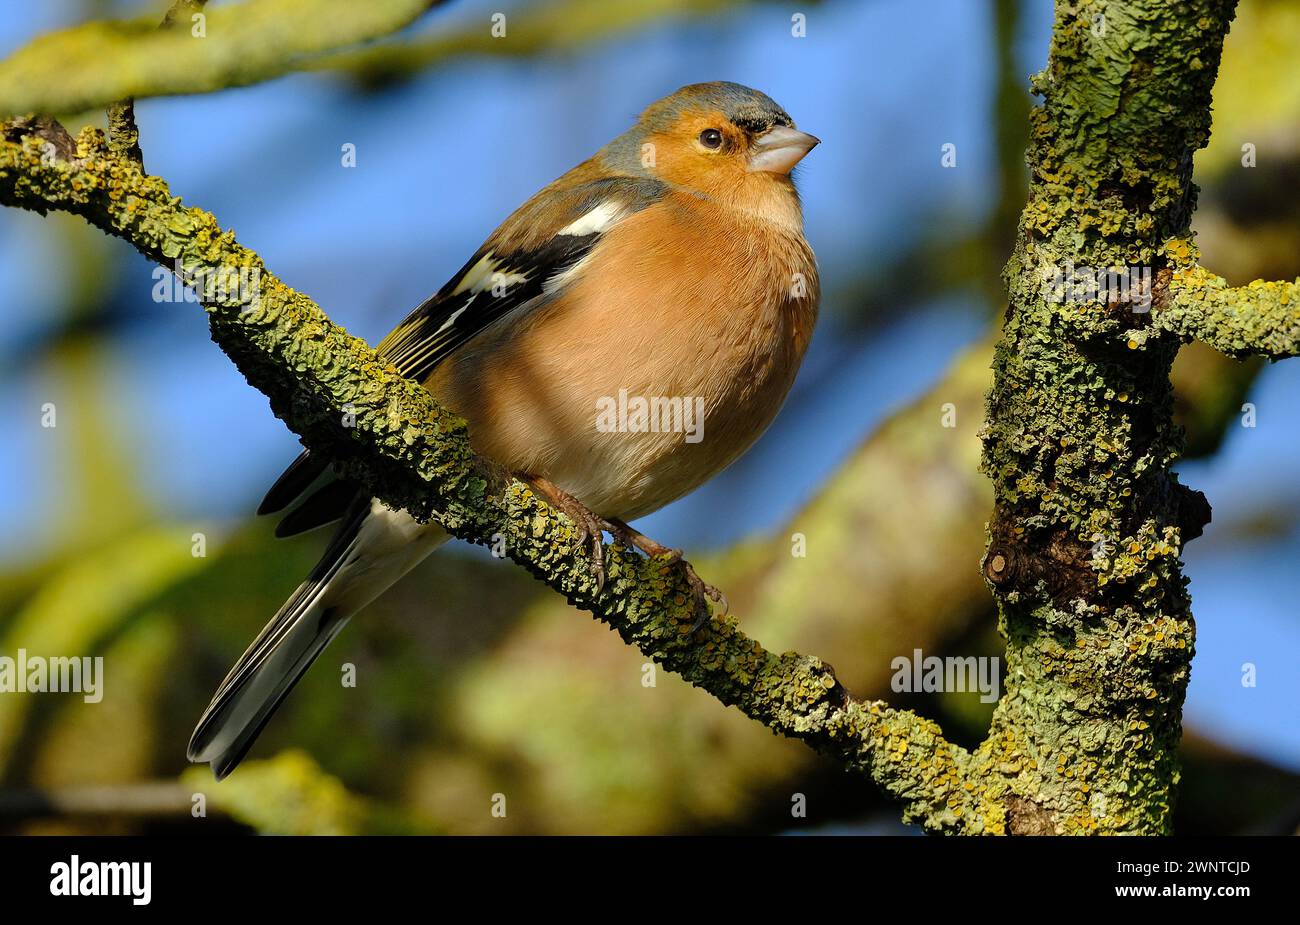 Lo chaffinch eurasiatico, lo chaffinch comune, o semplicemente lo chaffinch, è un piccolo uccello passerino comune e diffuso nella famiglia dei finch. Maschio. Foto Stock